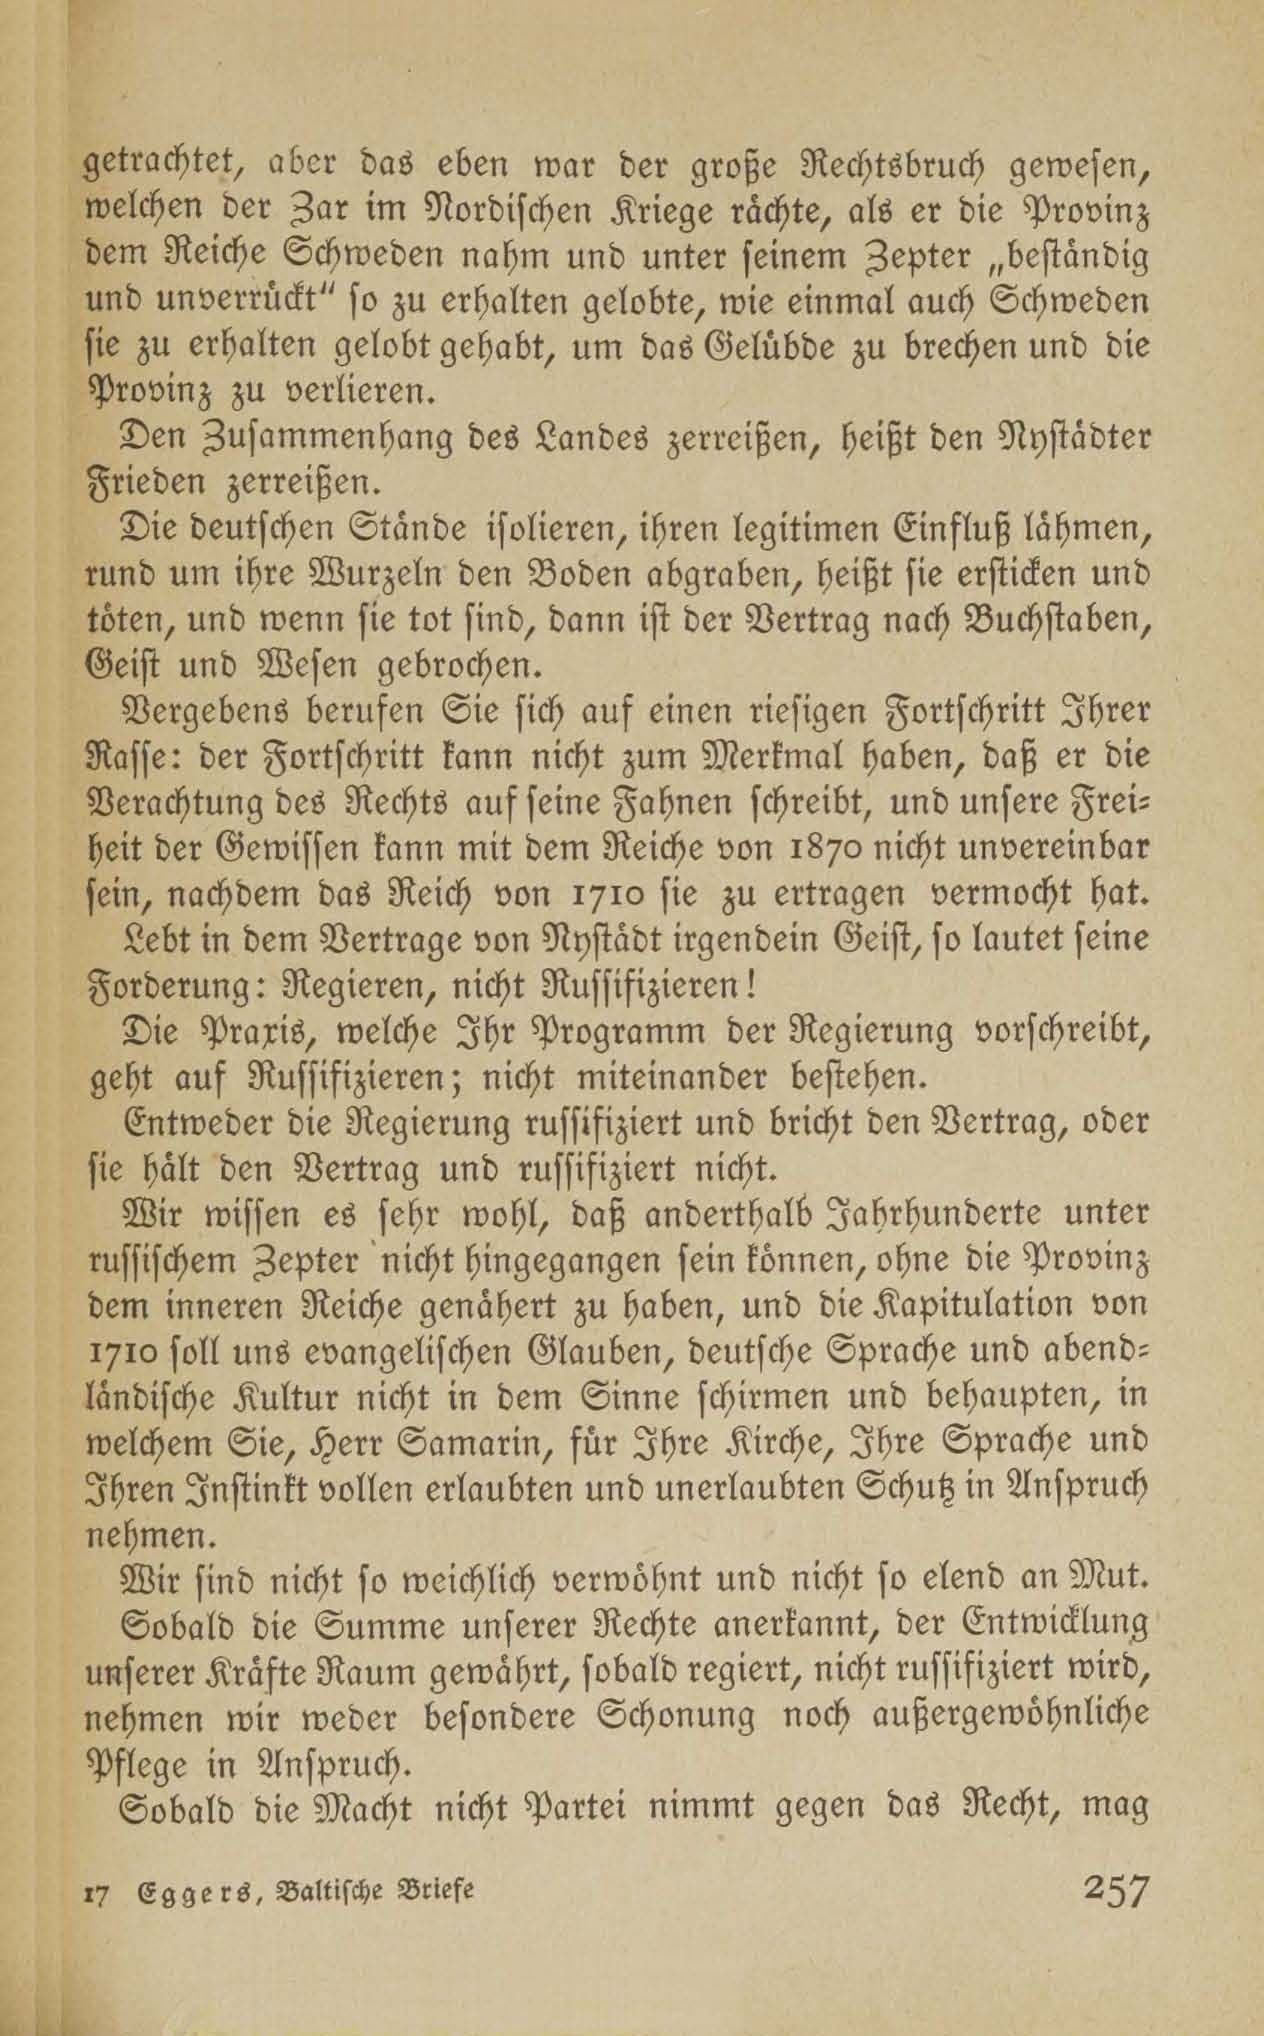 Im Kampf für die baltischen Landesrechte (1917 ?) | 26. (257) Haupttext